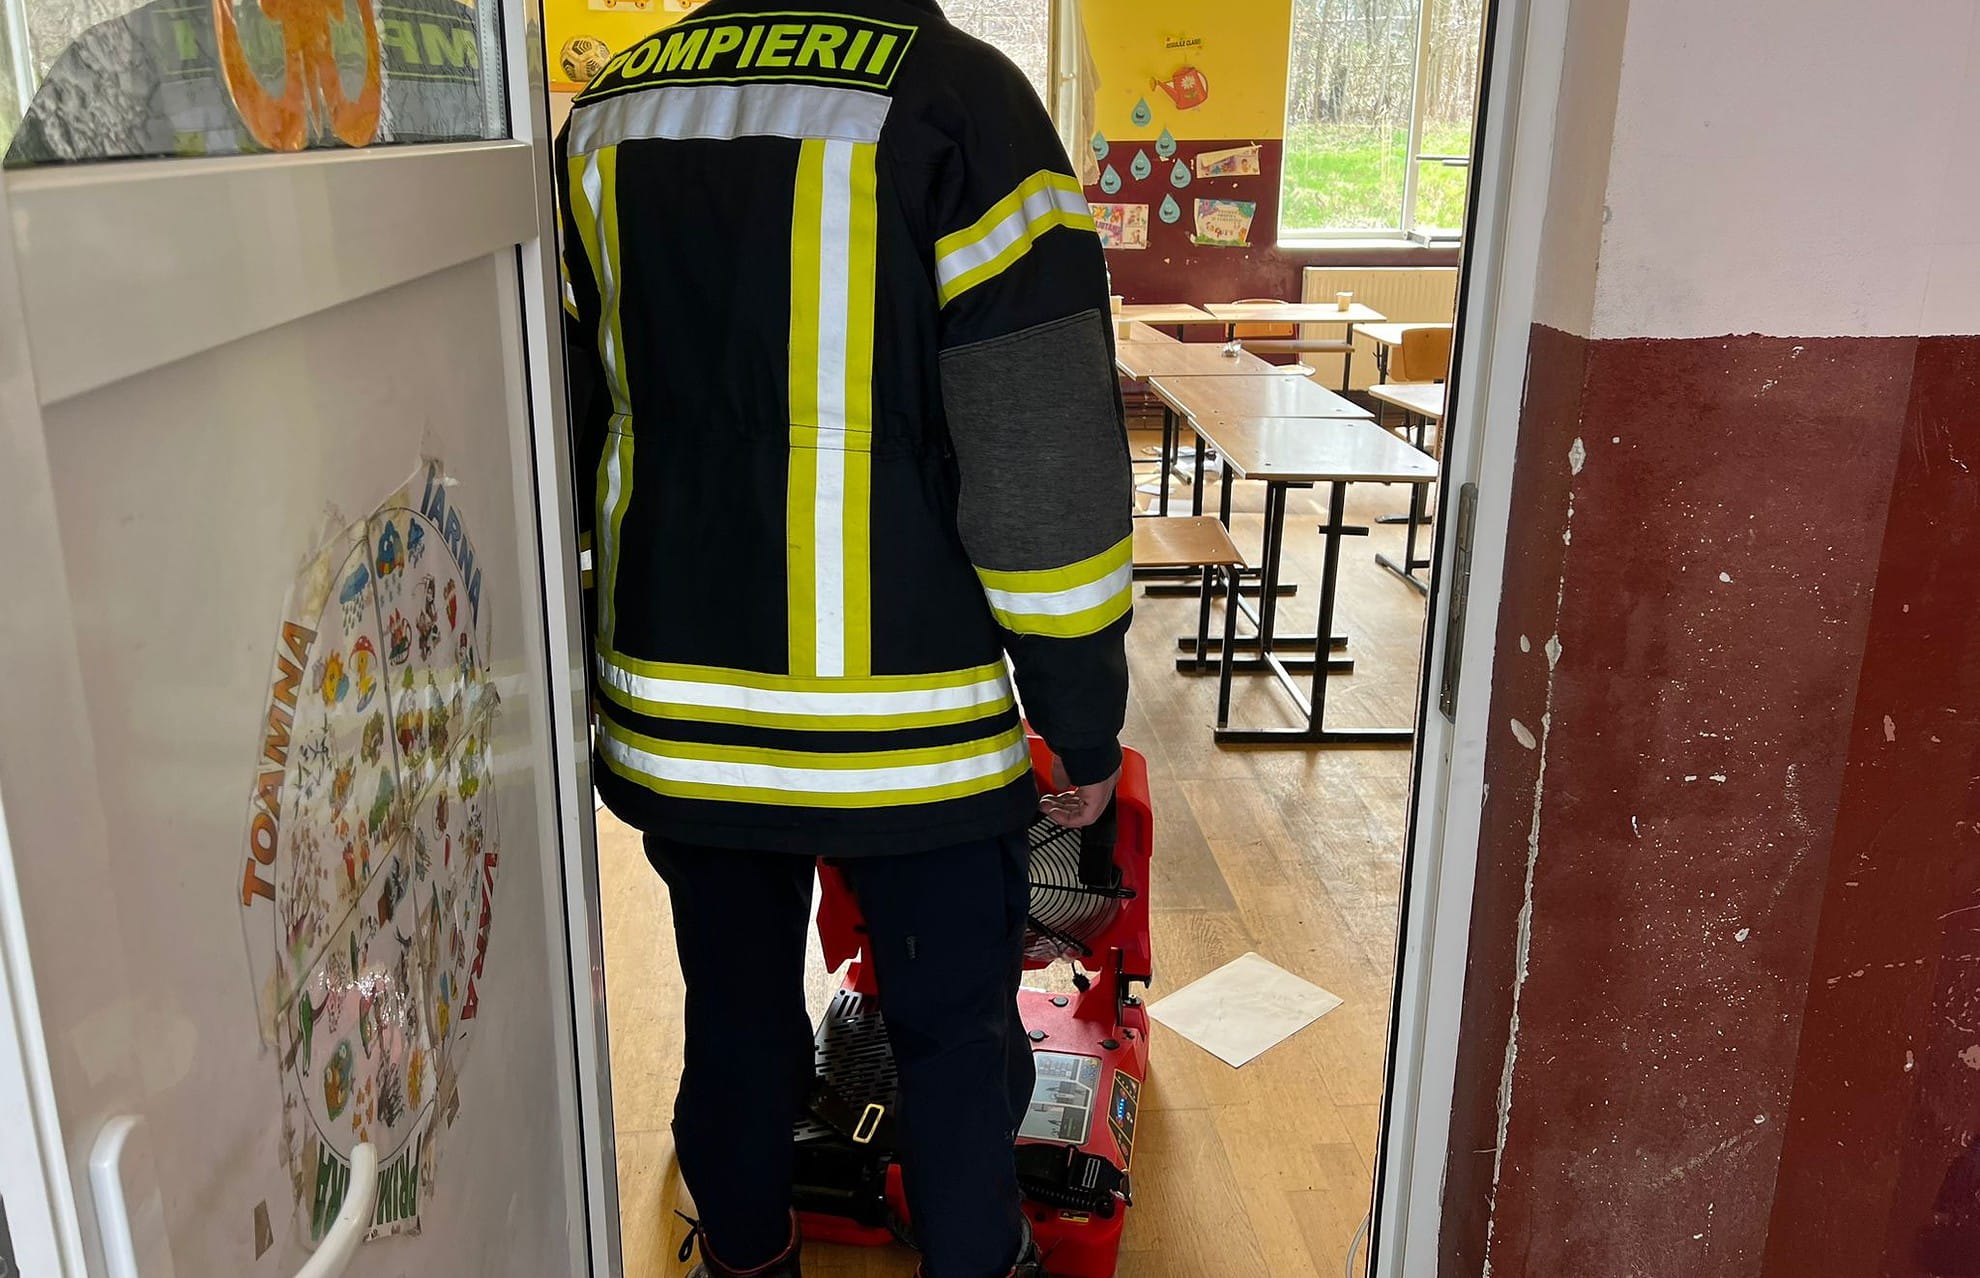 foto incendiu la școala din scoreiu - zeci de elevi și dascăli, evacuați de urgență